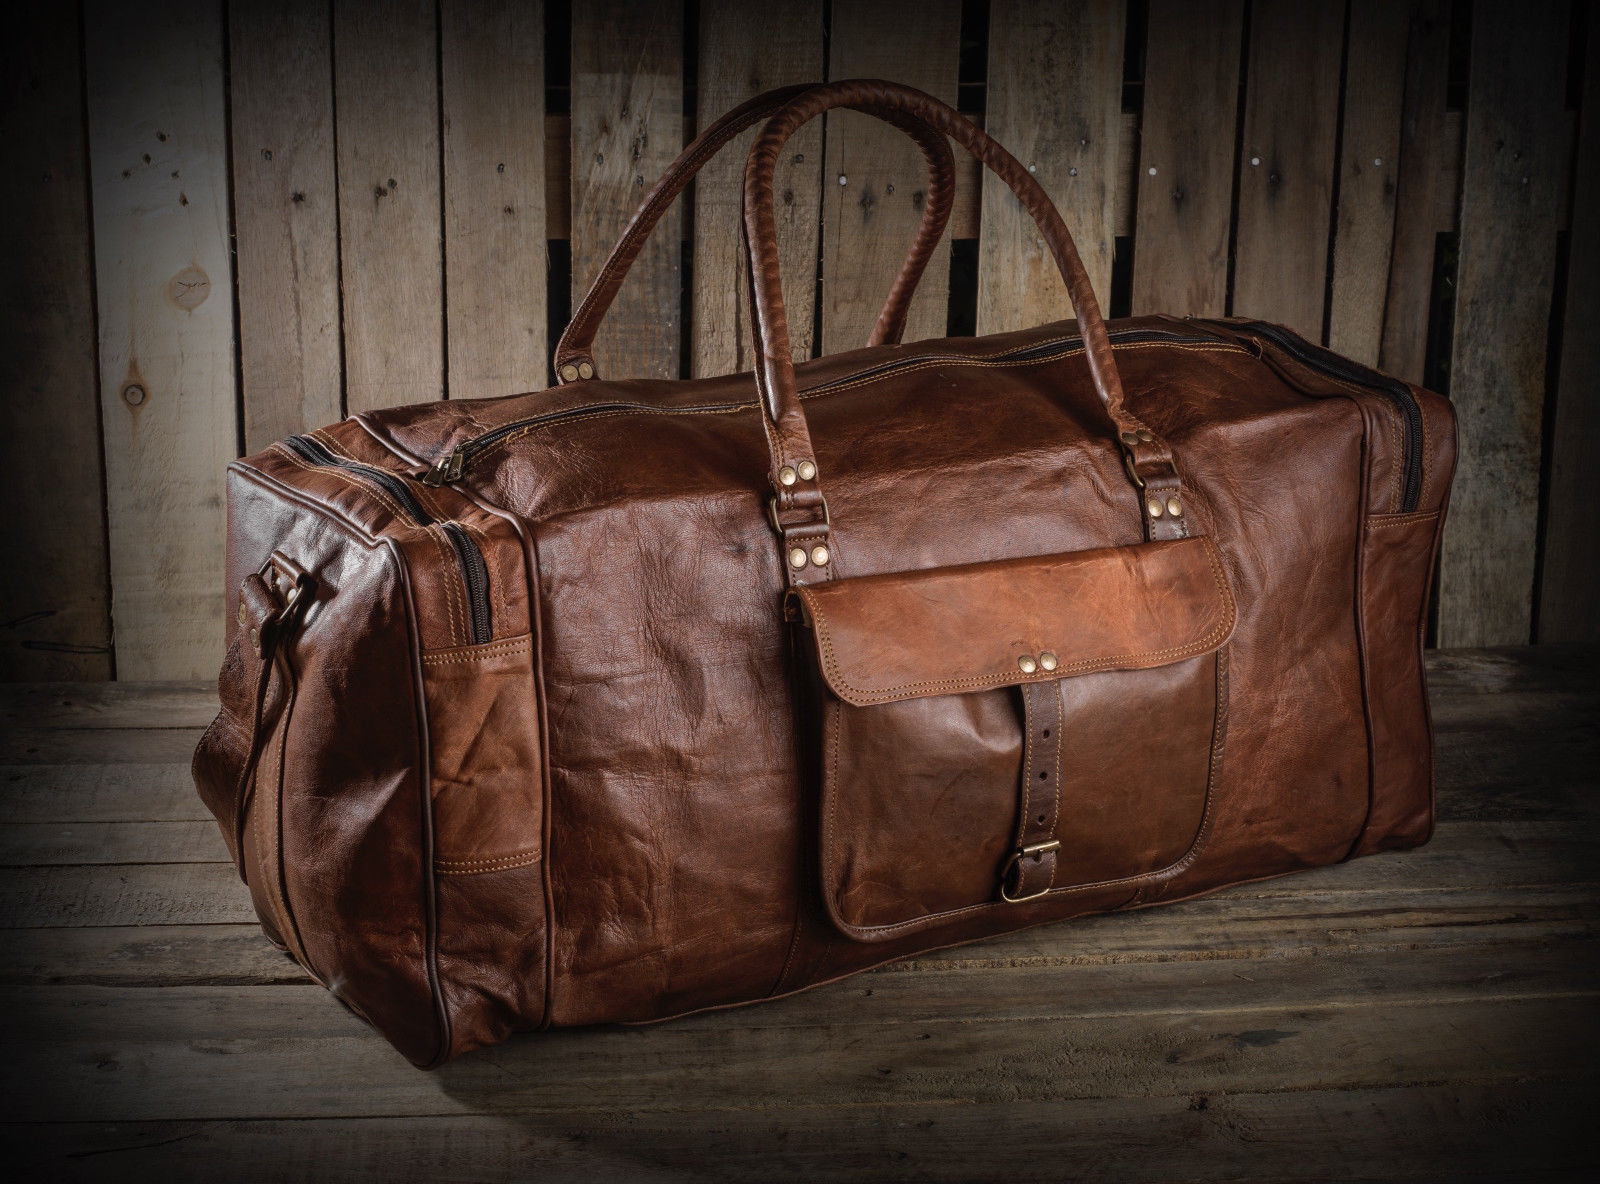 Rustic Duffle Weekender Bag with Top Handle